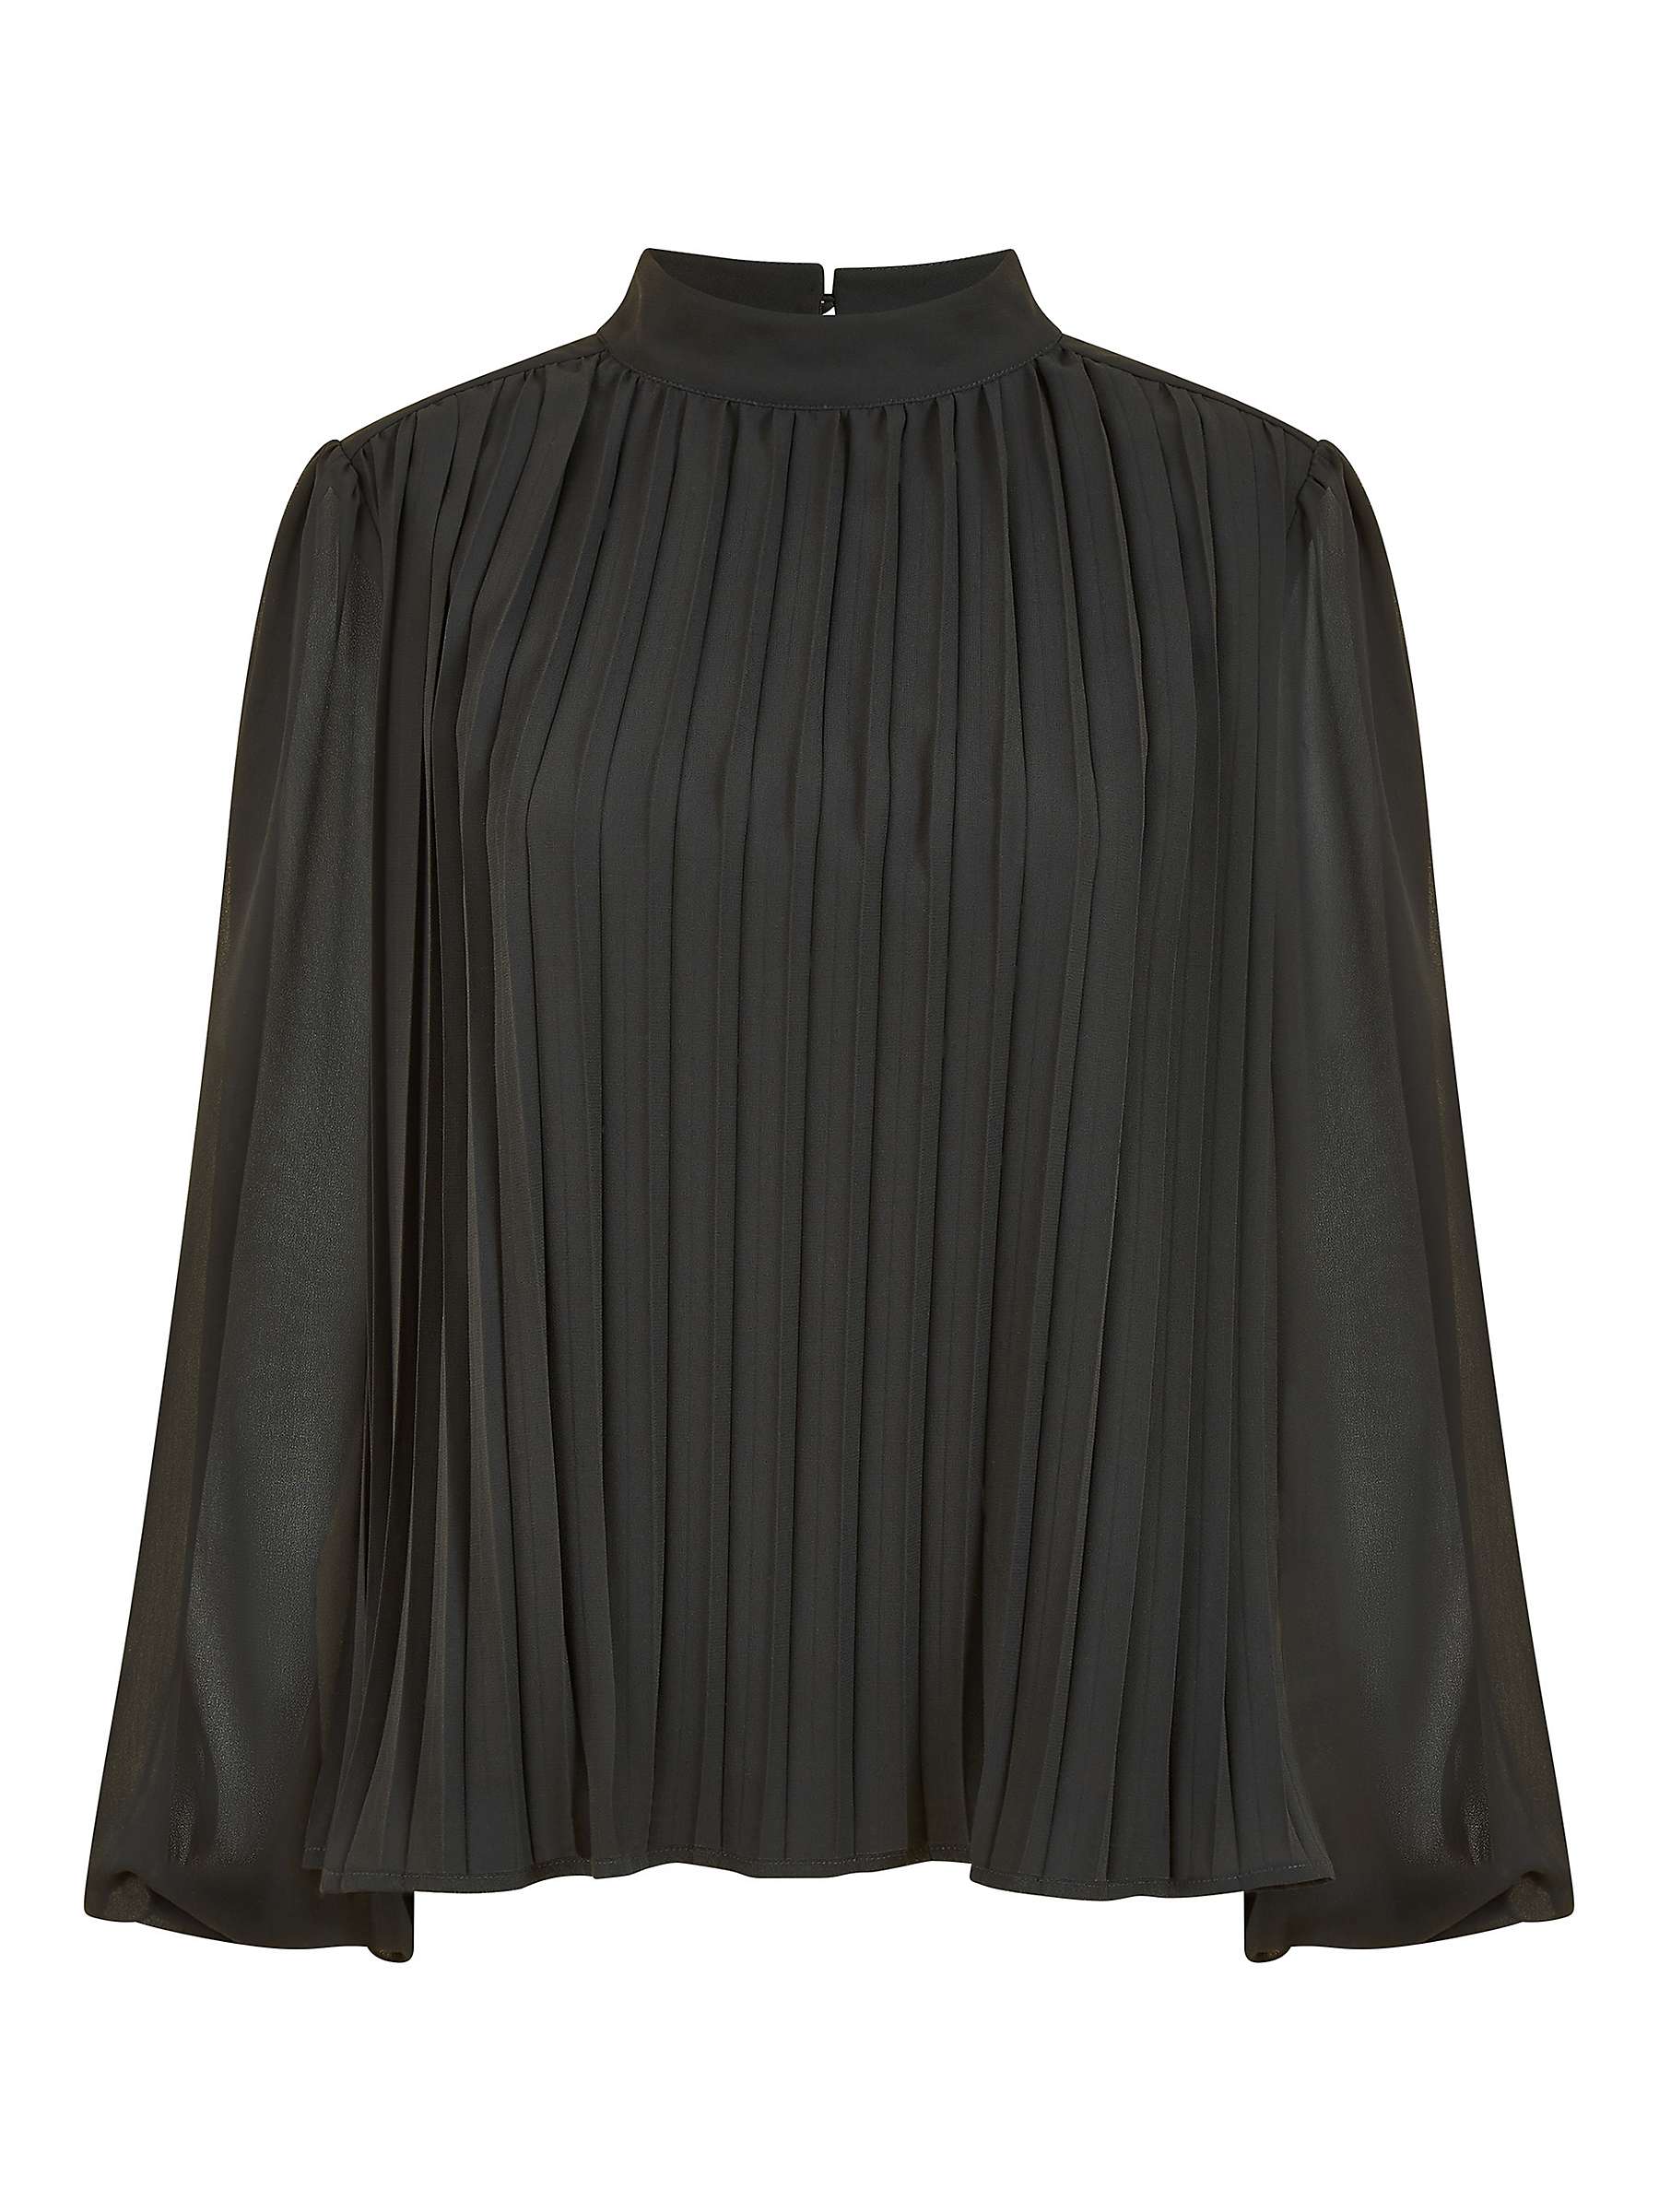 Buy Mela London Pleated Long Sleeve Top, Black Online at johnlewis.com